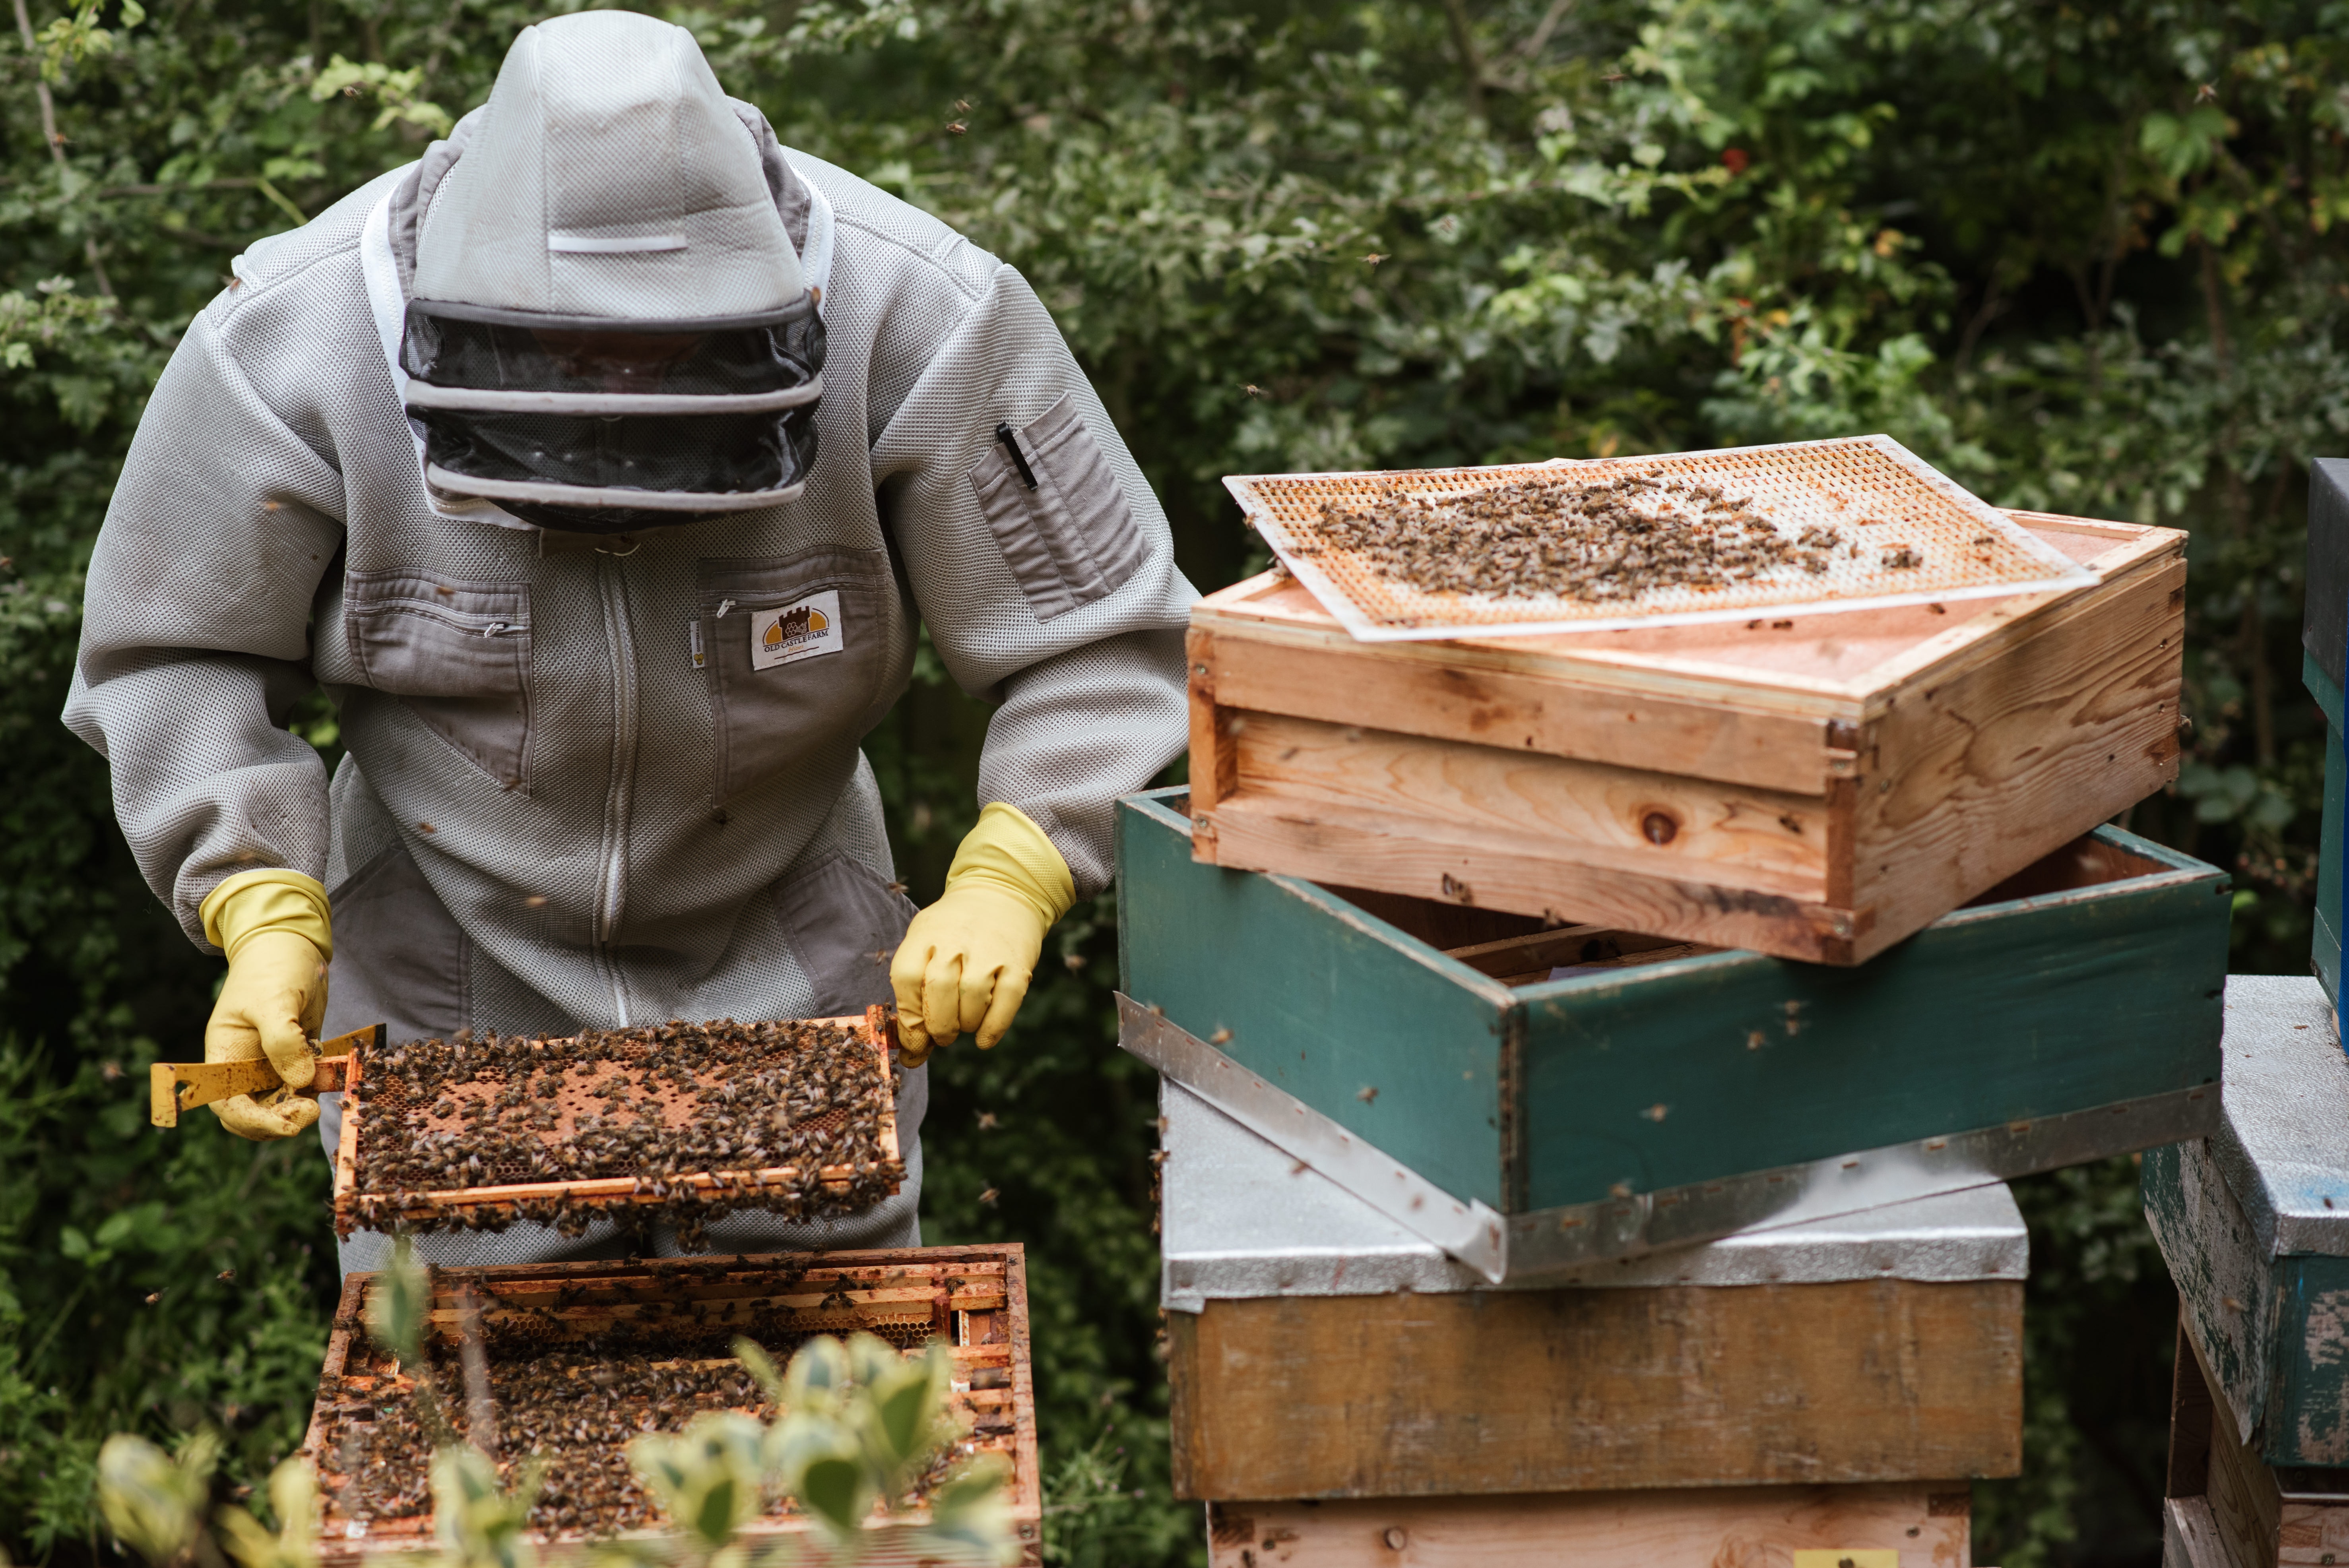 Comment œuvrer pour la protection des abeilles ?